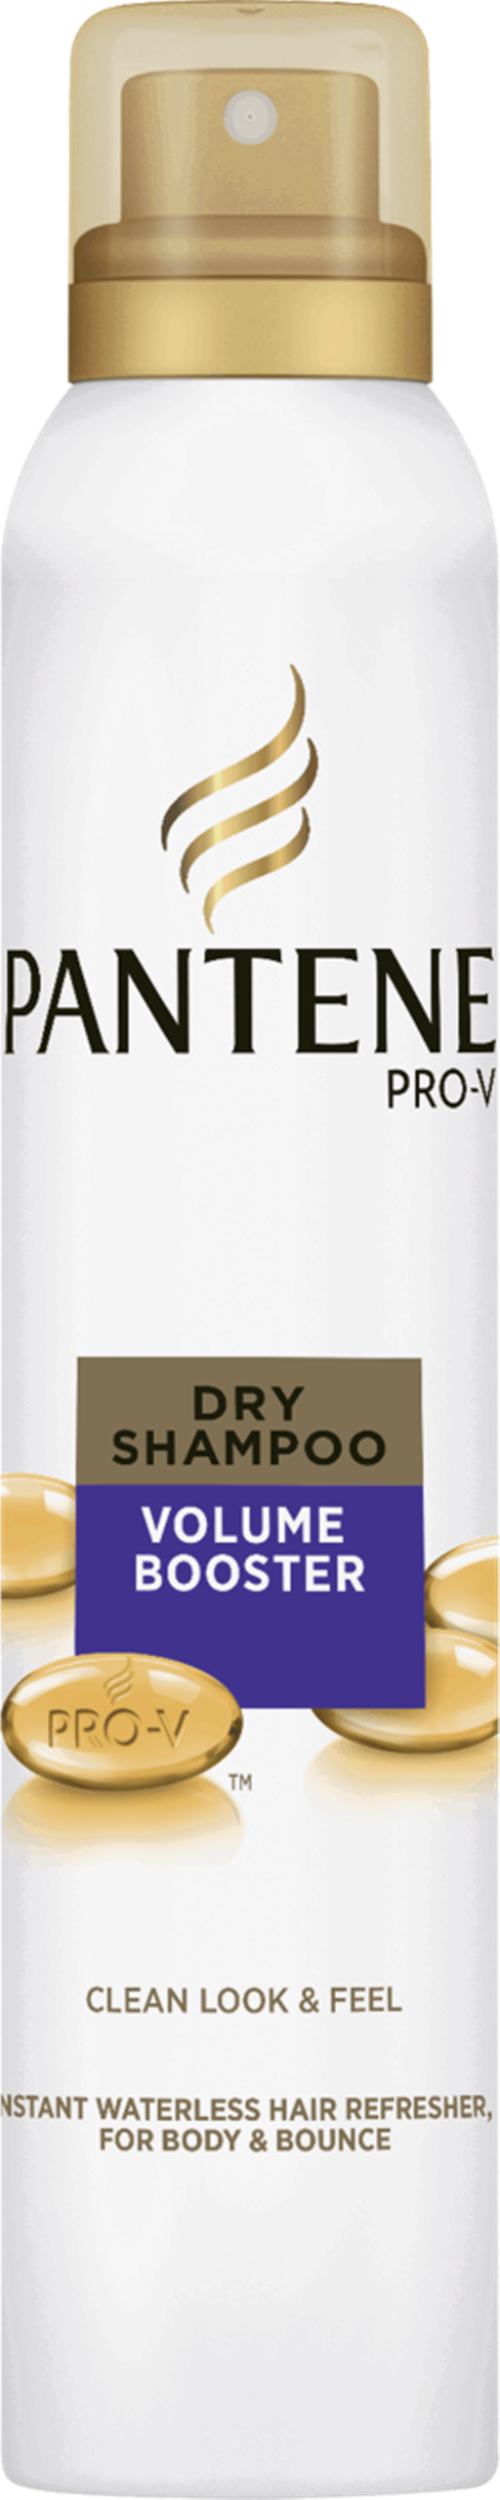 suchy szampon pantene rodzaje